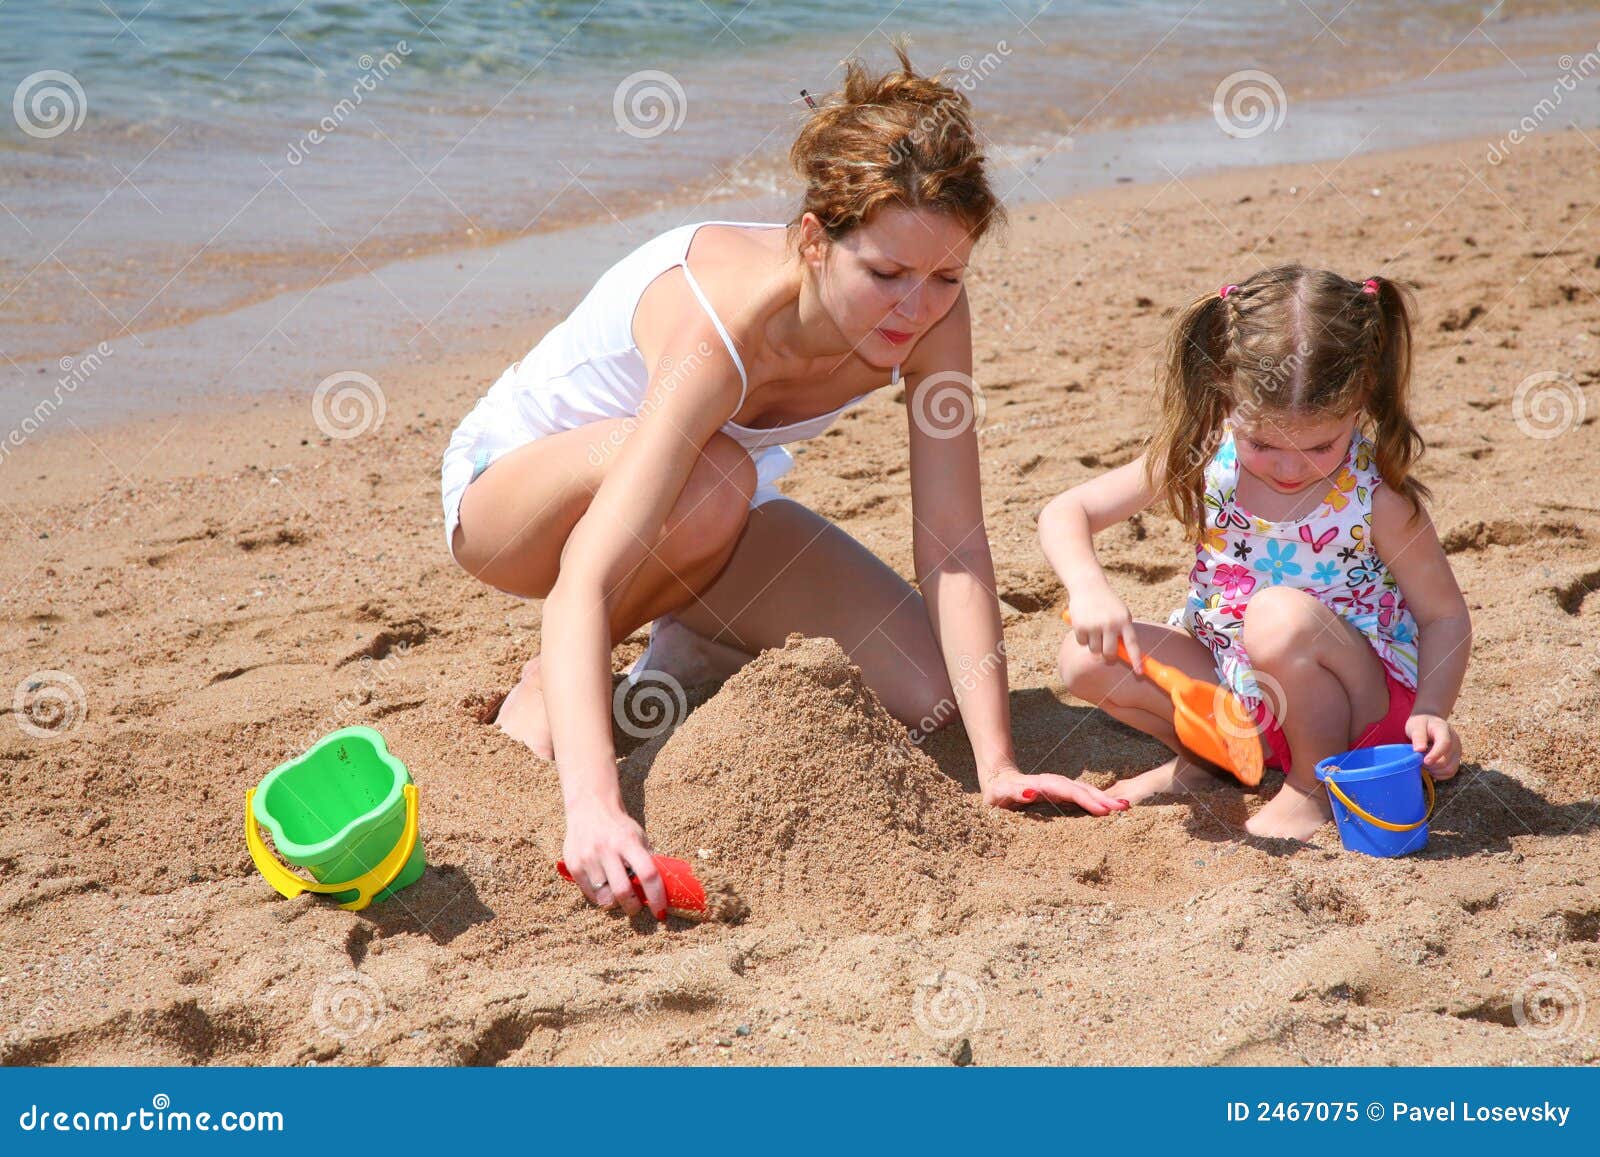 нудиский пляж с голыми детьми фото 77